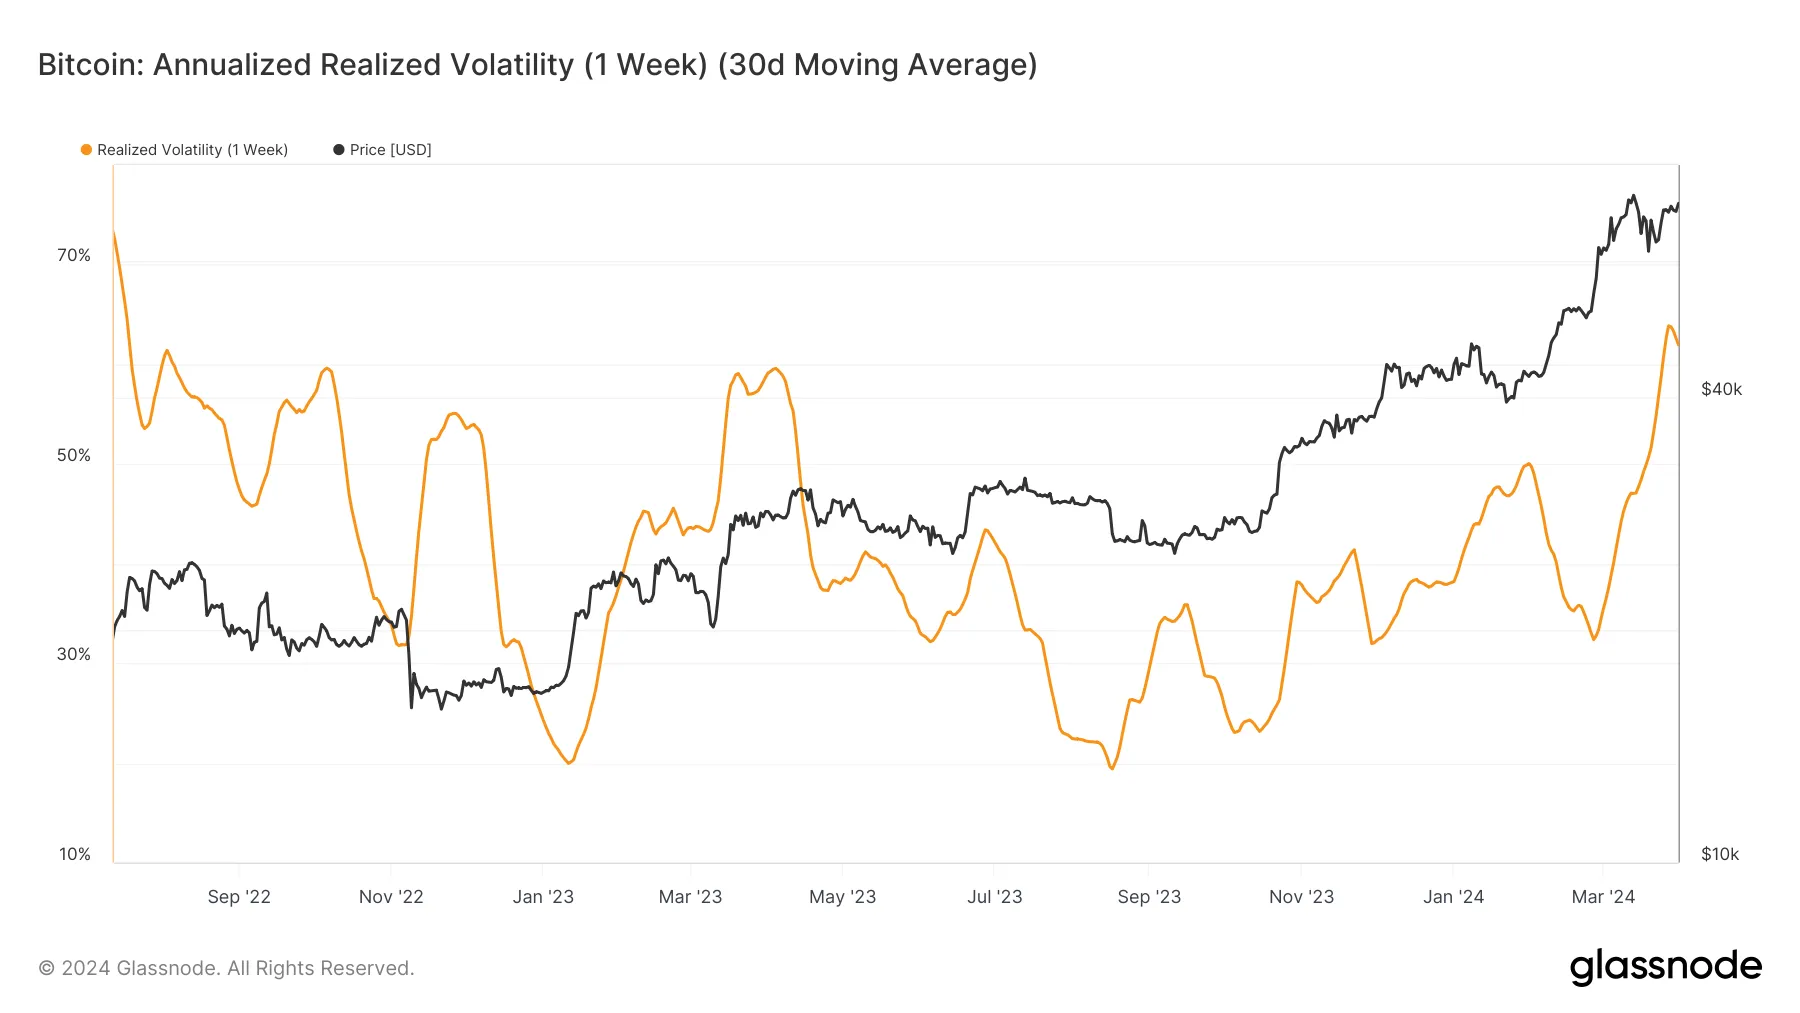 Volatilidad realizada anualizada de Bitcoin (1 semana, promedio móvil de 30 días). Fuente: Glassnode